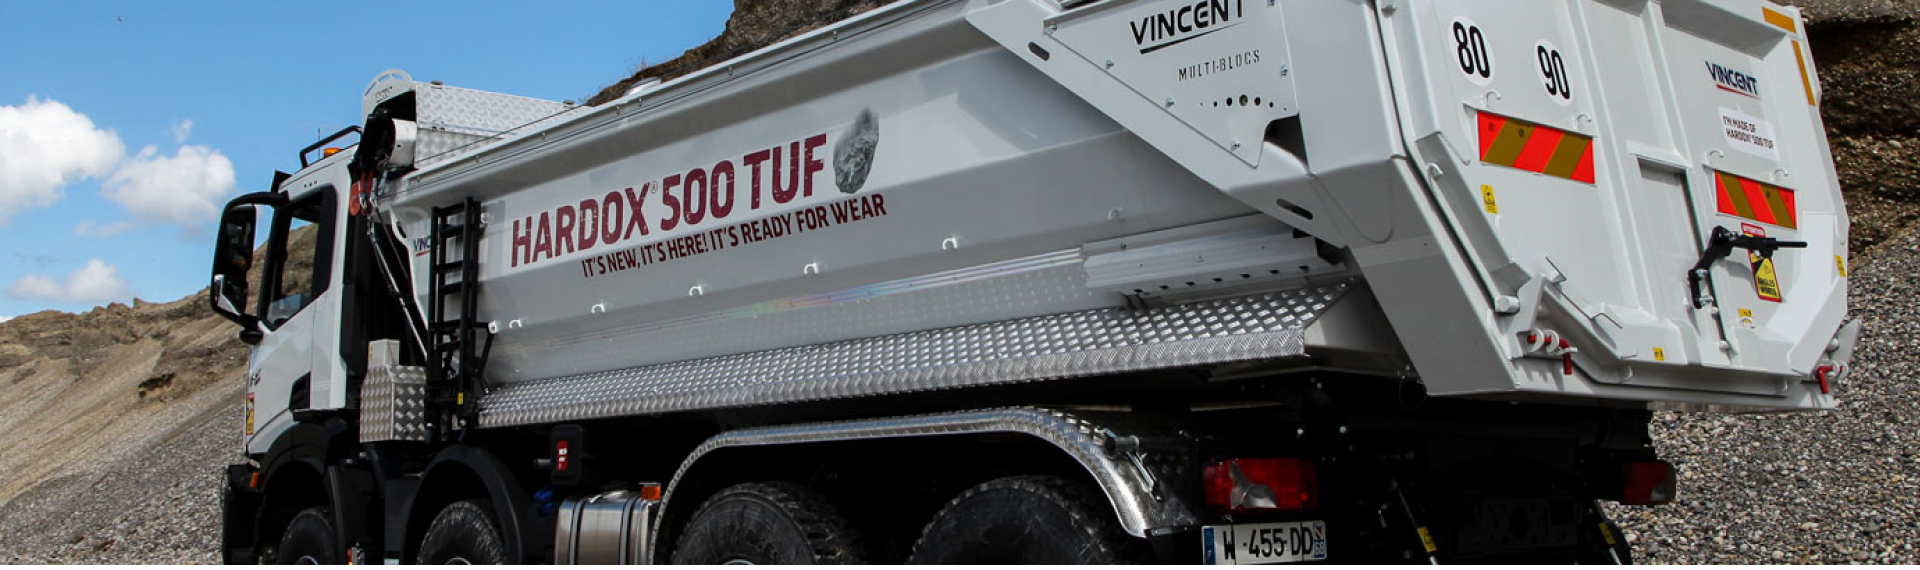 Caminhão basculante em canteiro de obras apresentando carroceria feita com o aço Hardox® 500 Tuf, com o slogan It’s New, It’s Here, It’s Ready For Wear!  